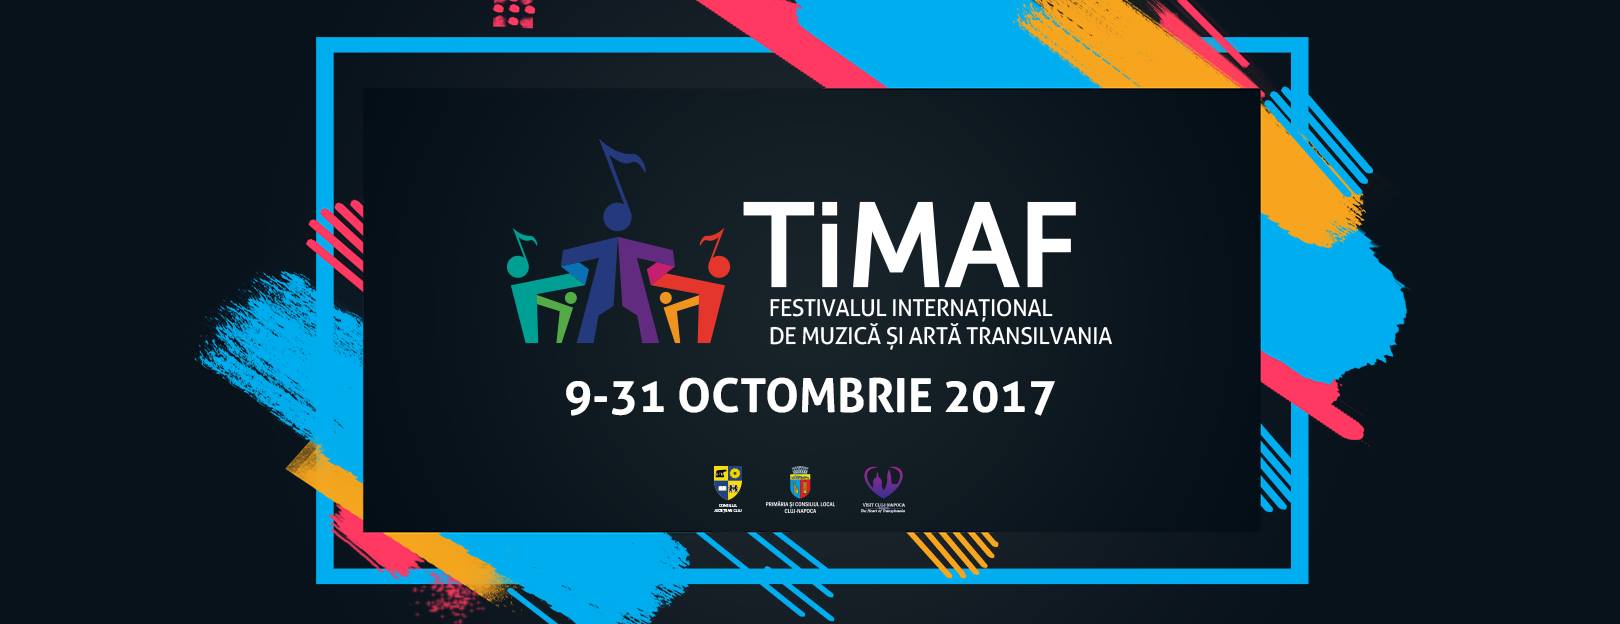 TiMAF – Festivalul Internațional de Muzică și Artă Transilvania